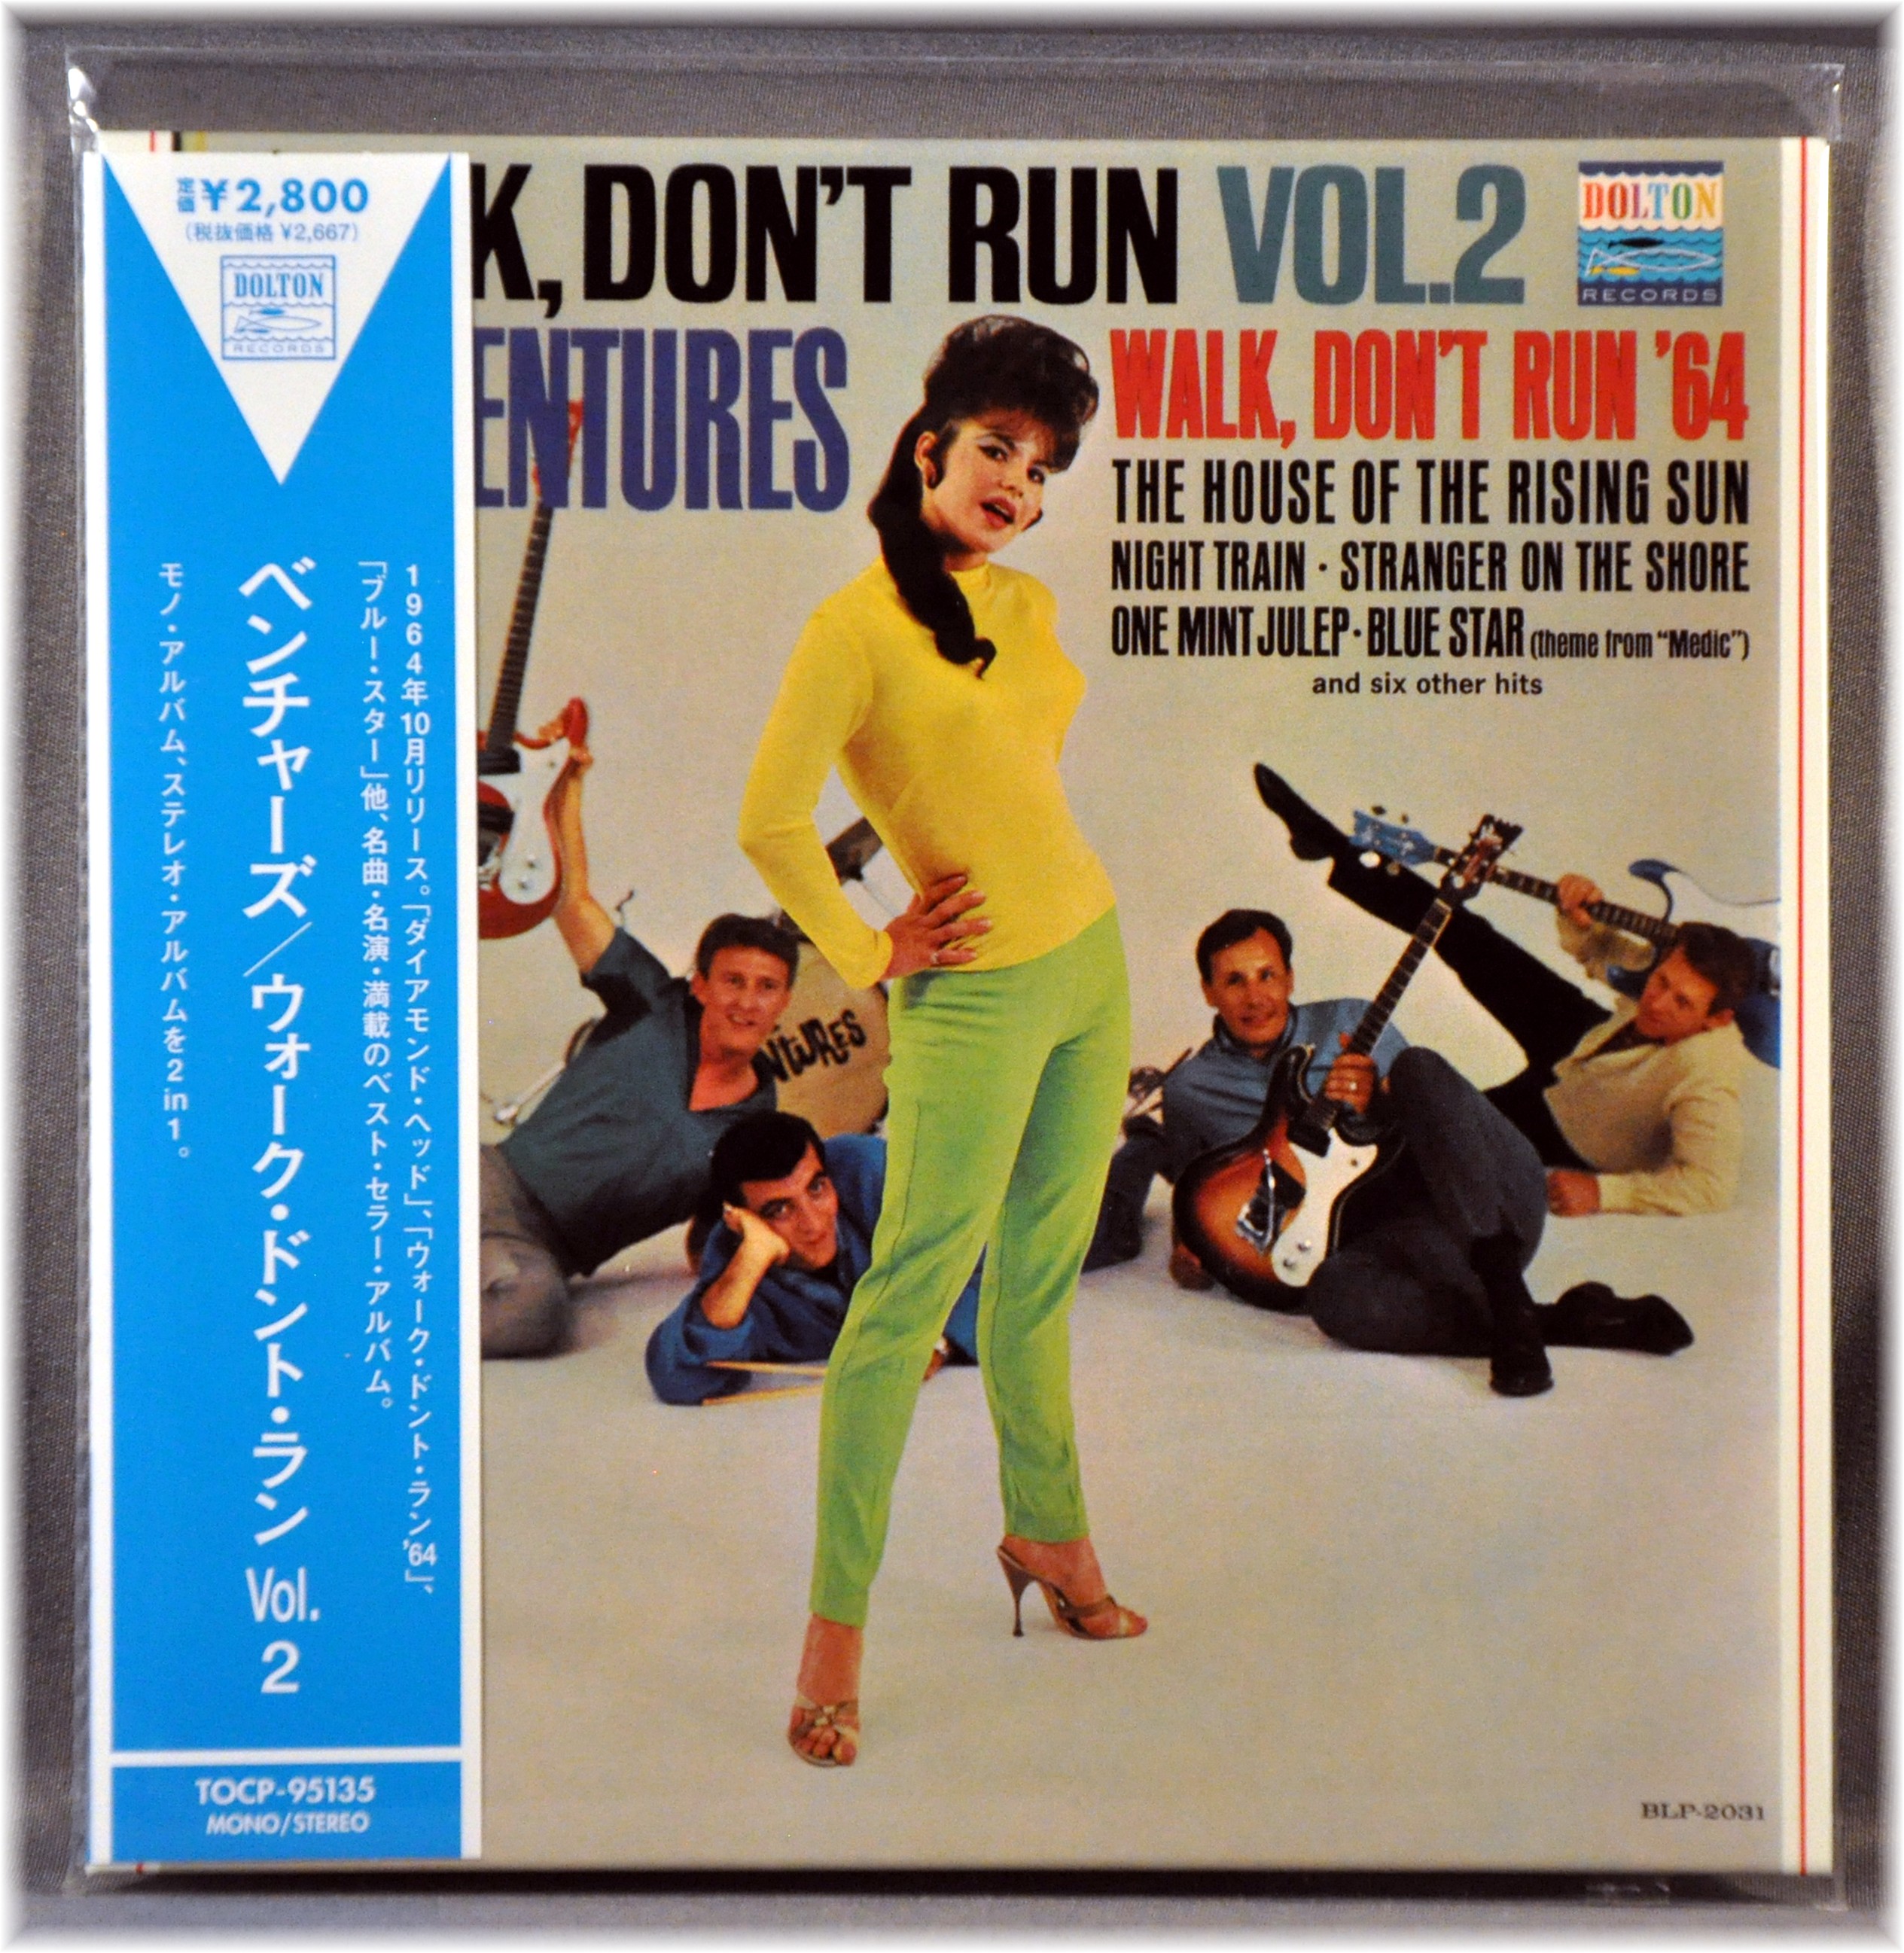 Dont run. Walk don't Run. The Ventures. The Ventures walk don't Run. Обложка CD the Ventures walk don't Run.